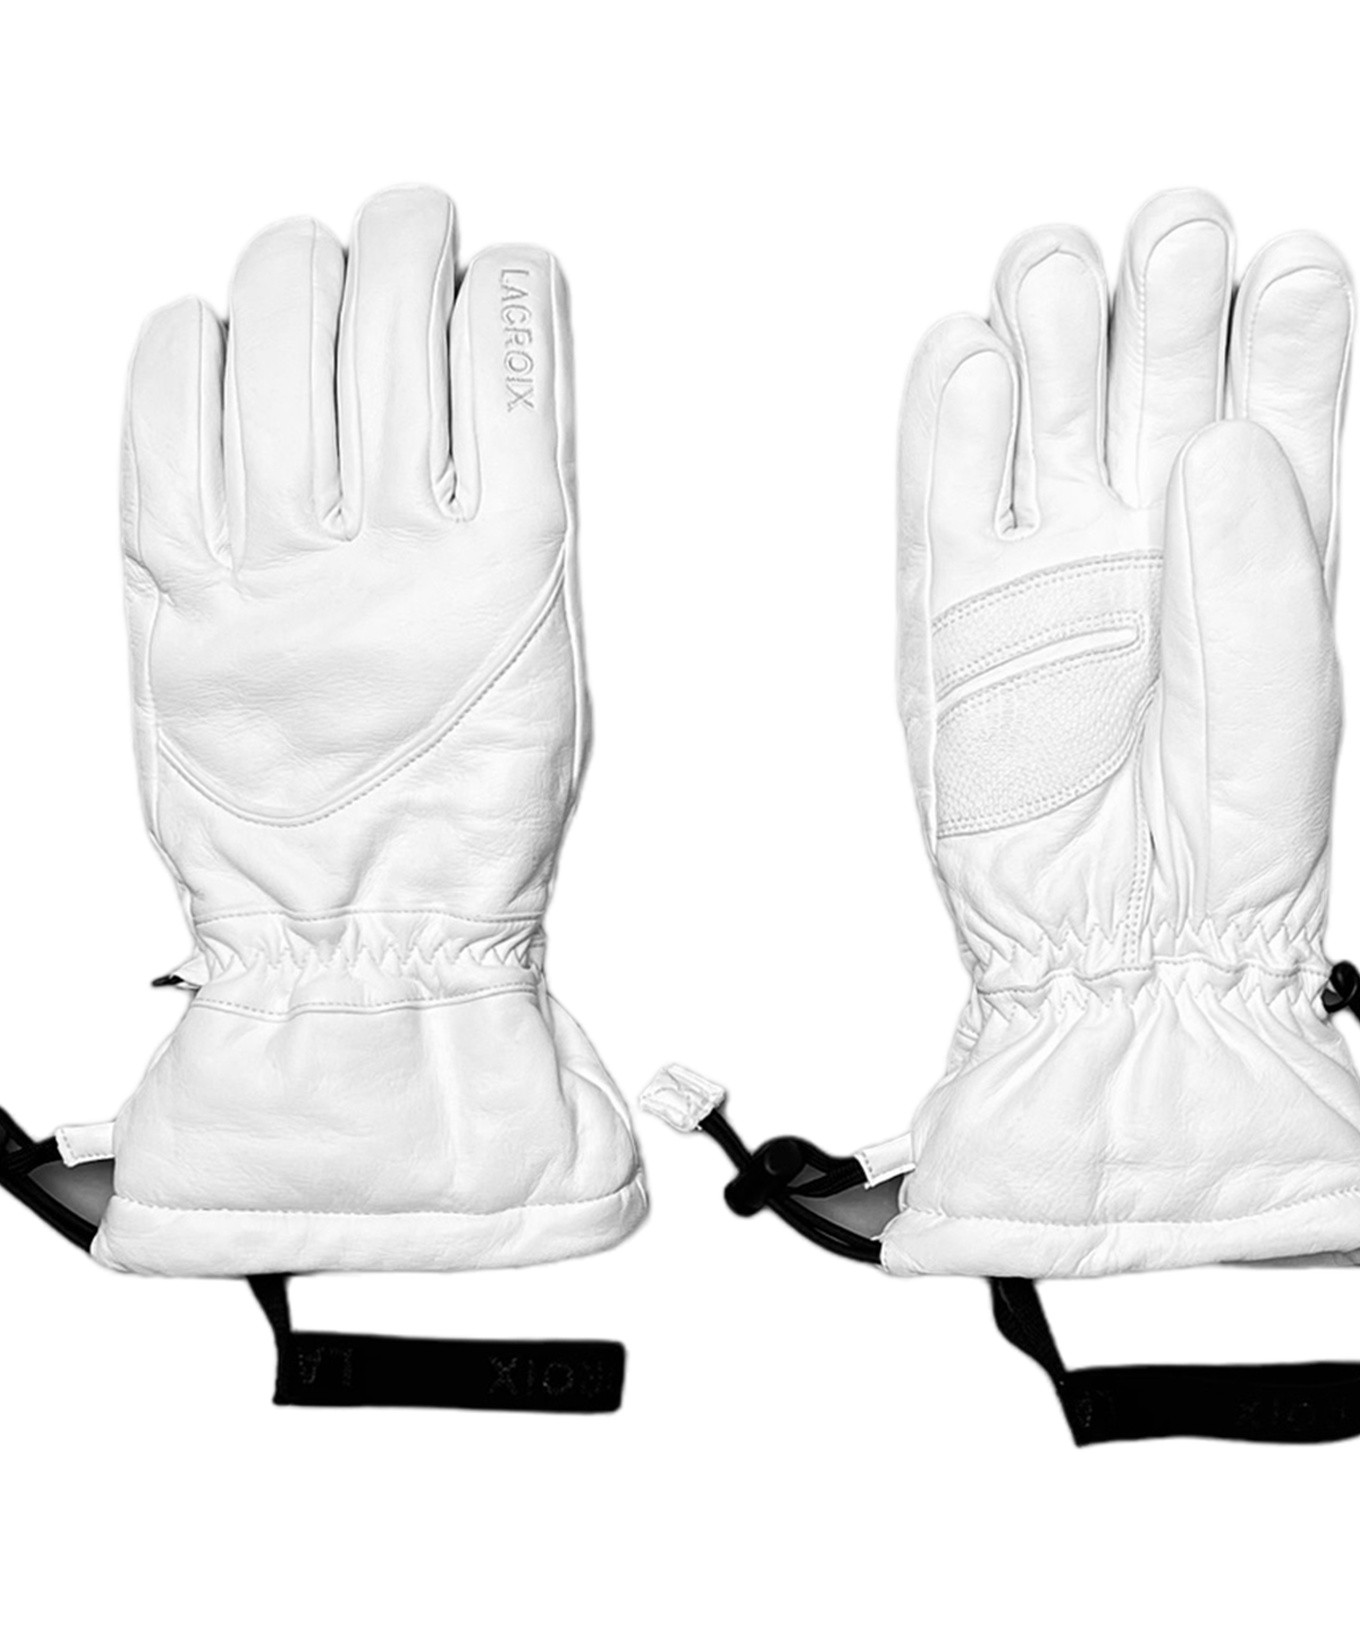 Women's ski gloves - Lacroix skis - Snow Emotion, ski store Paris